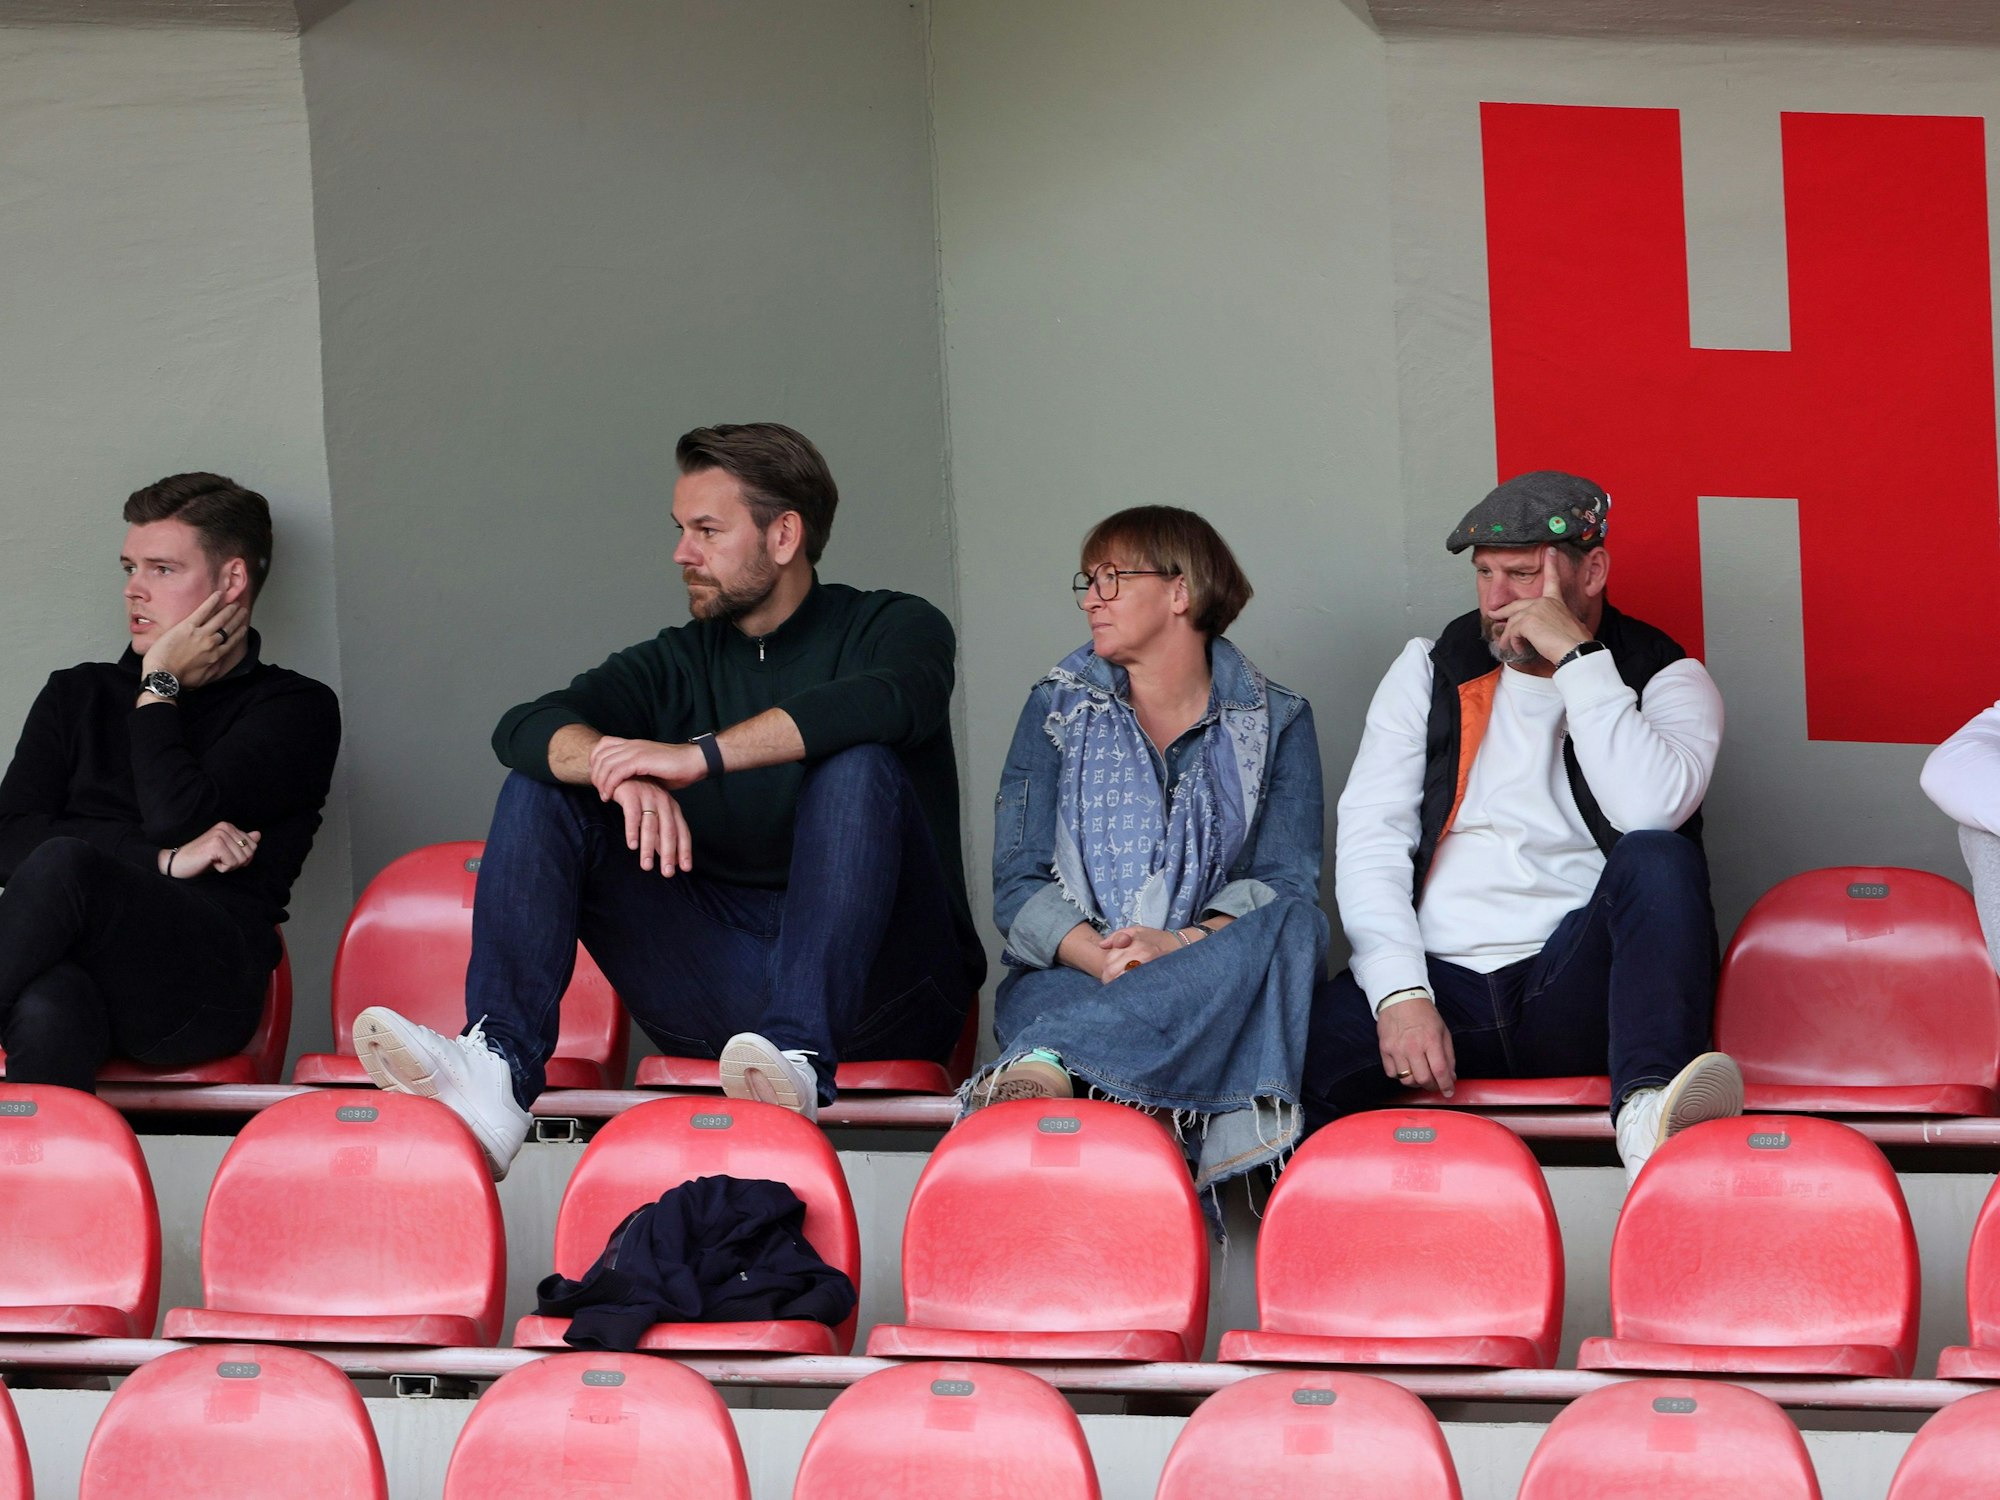 FC-Trainer Steffen Baumgart mit Ehefrau Katja, Thomas Kessler und Lukas Berg auf der Tribüne des Franz-Kremer-Stadions.
 





